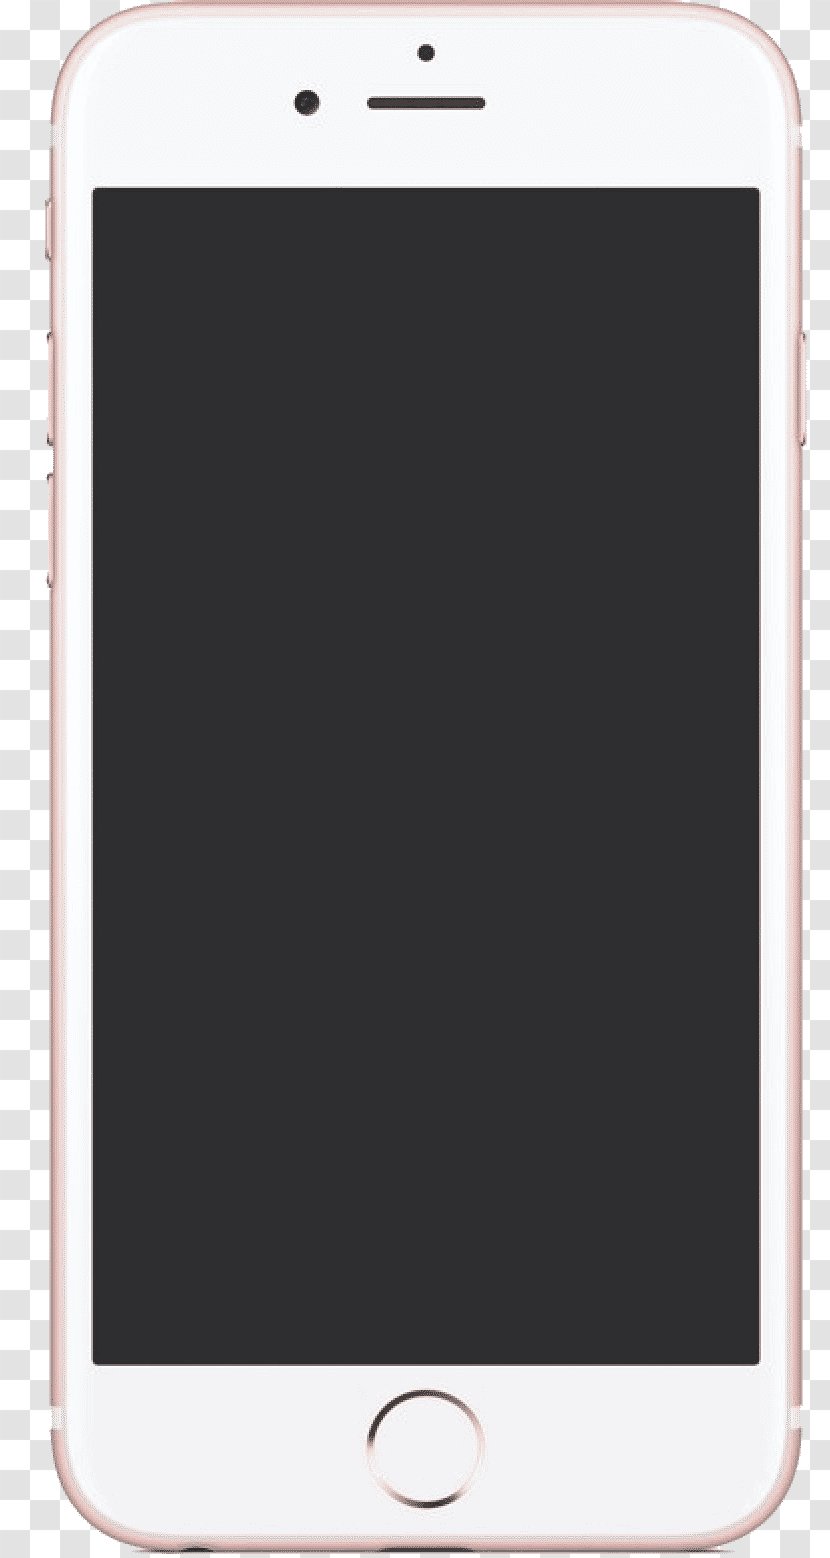 Iphone X - Rectangle Transparent PNG